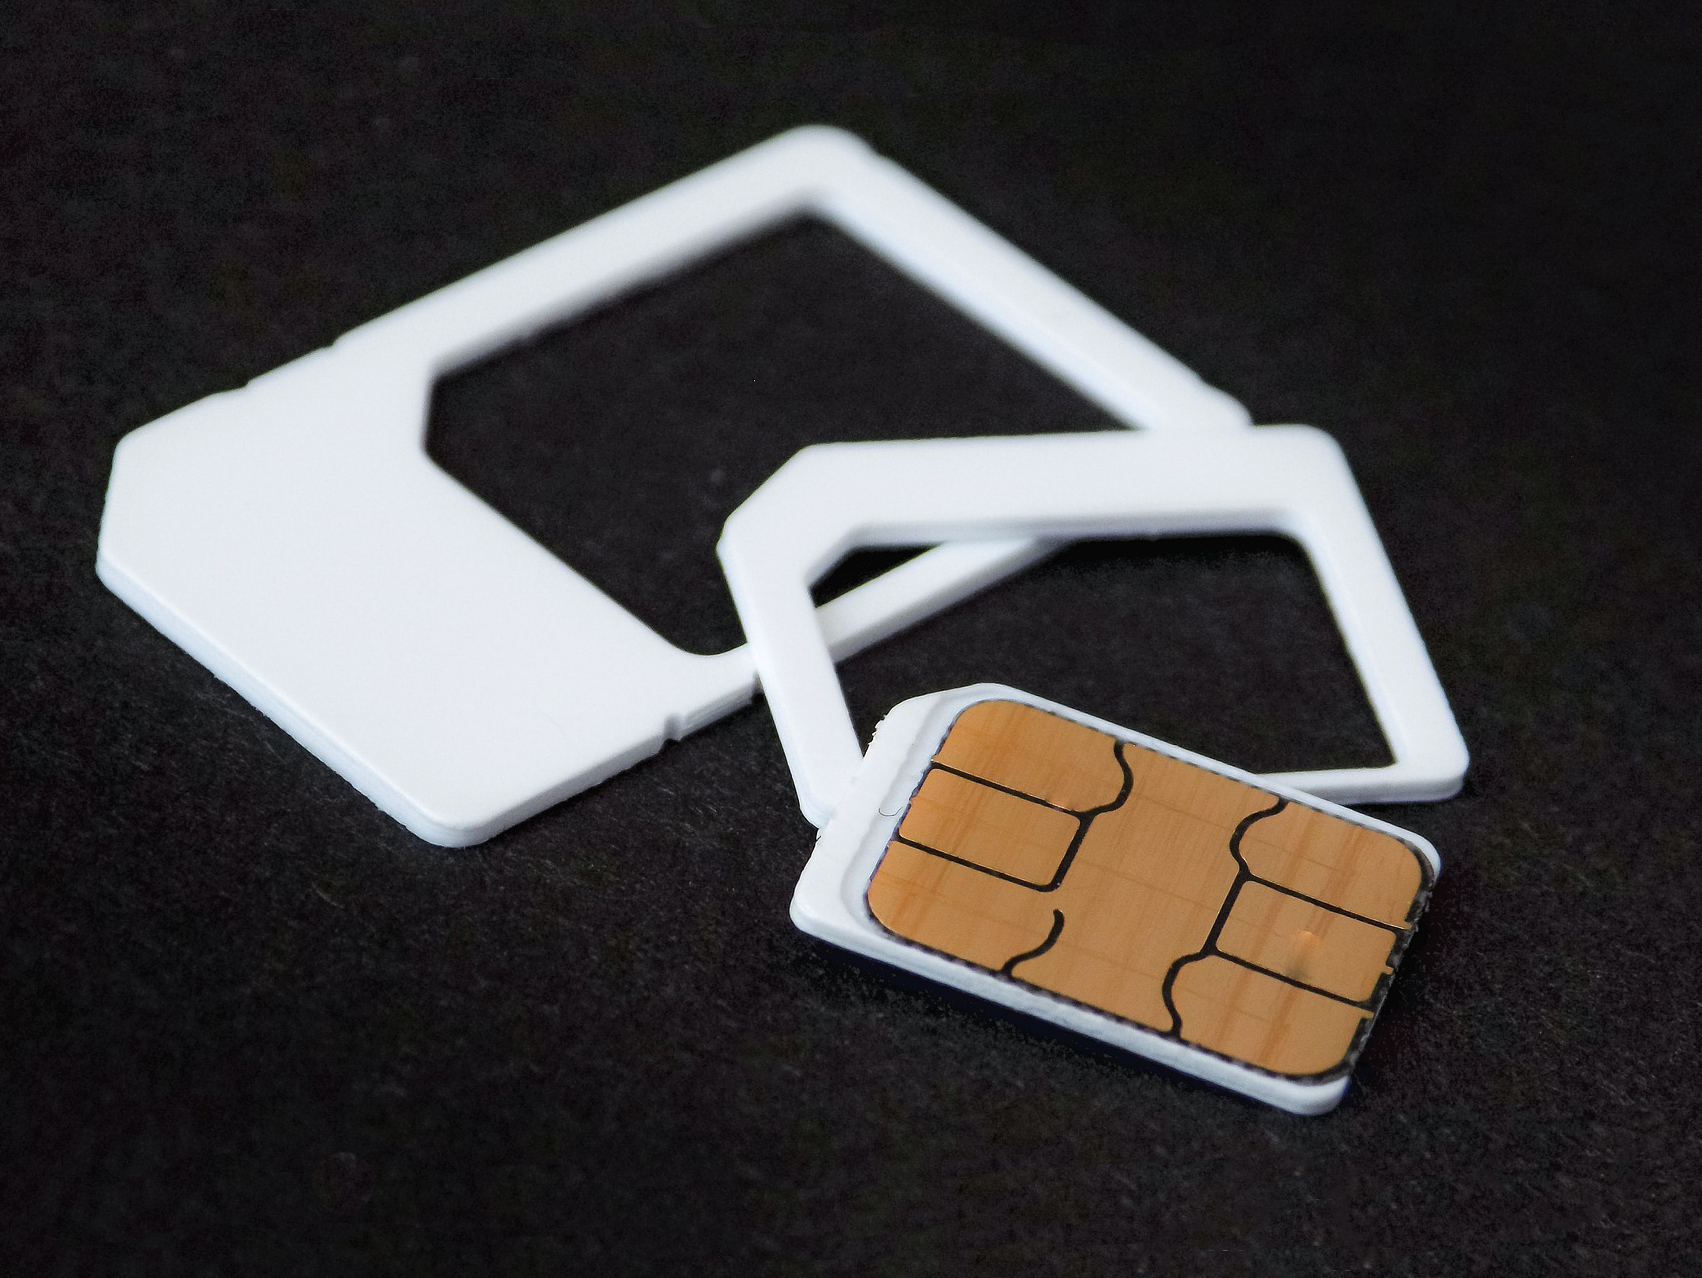 Nano SIM kartica koja je najmanjih dimenzija i dva plastična okvira koji nam dočaravaju dimenzije starijih i većih tipova SIM kartica.